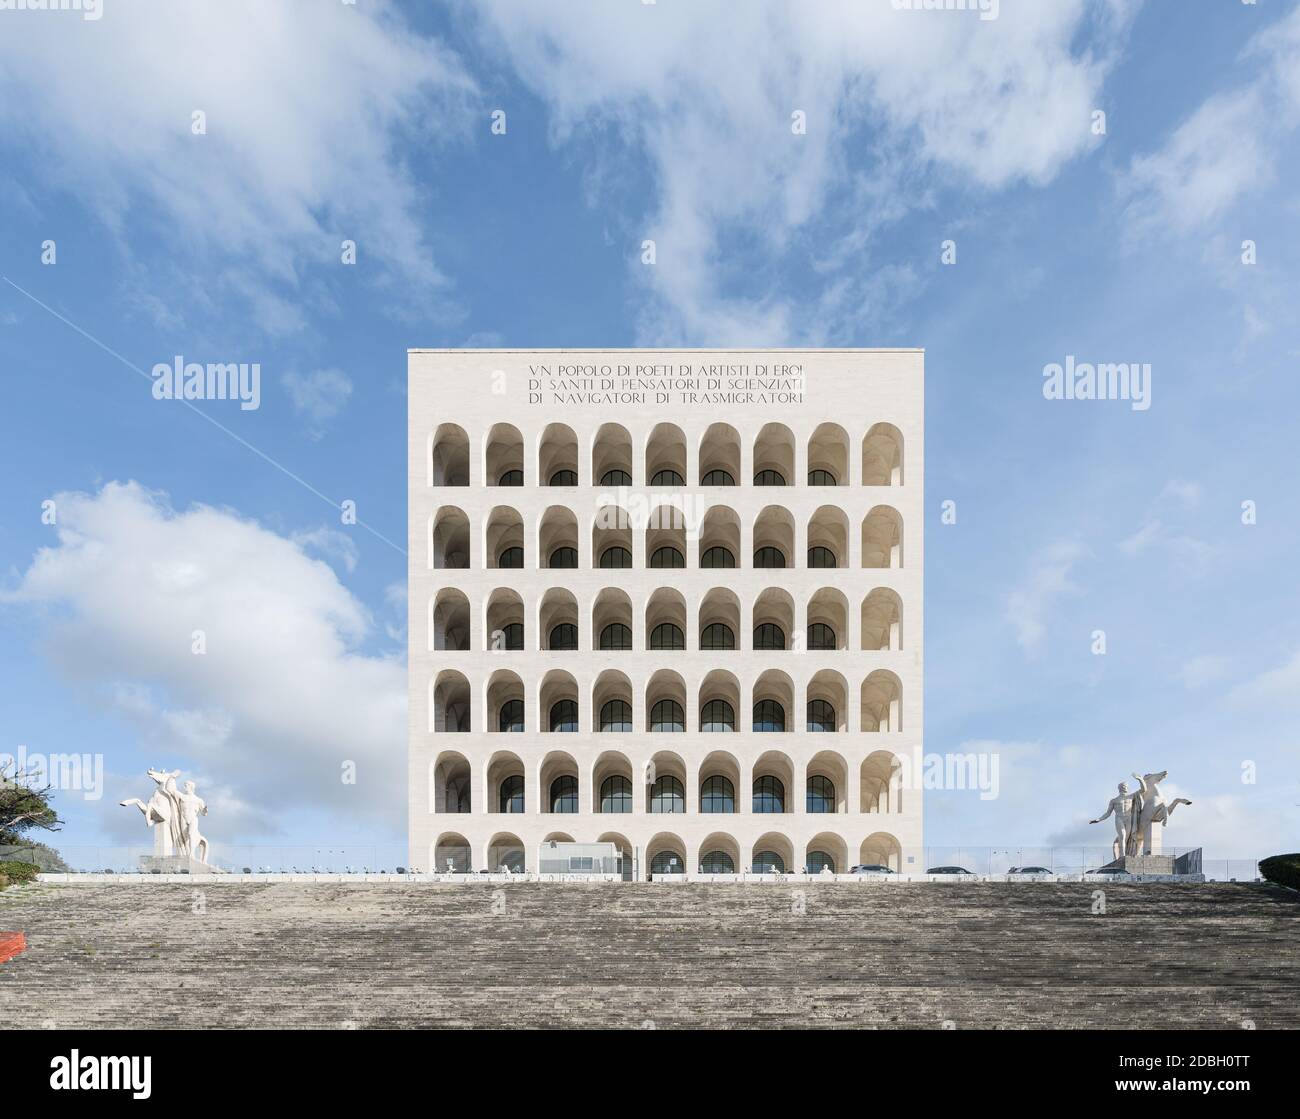 The Square Colosseum (Palazzo della Civiltà Italiana) is a fascist-era building part of the rationalism architecture district EUR, in Rome, Italy Stock Photo